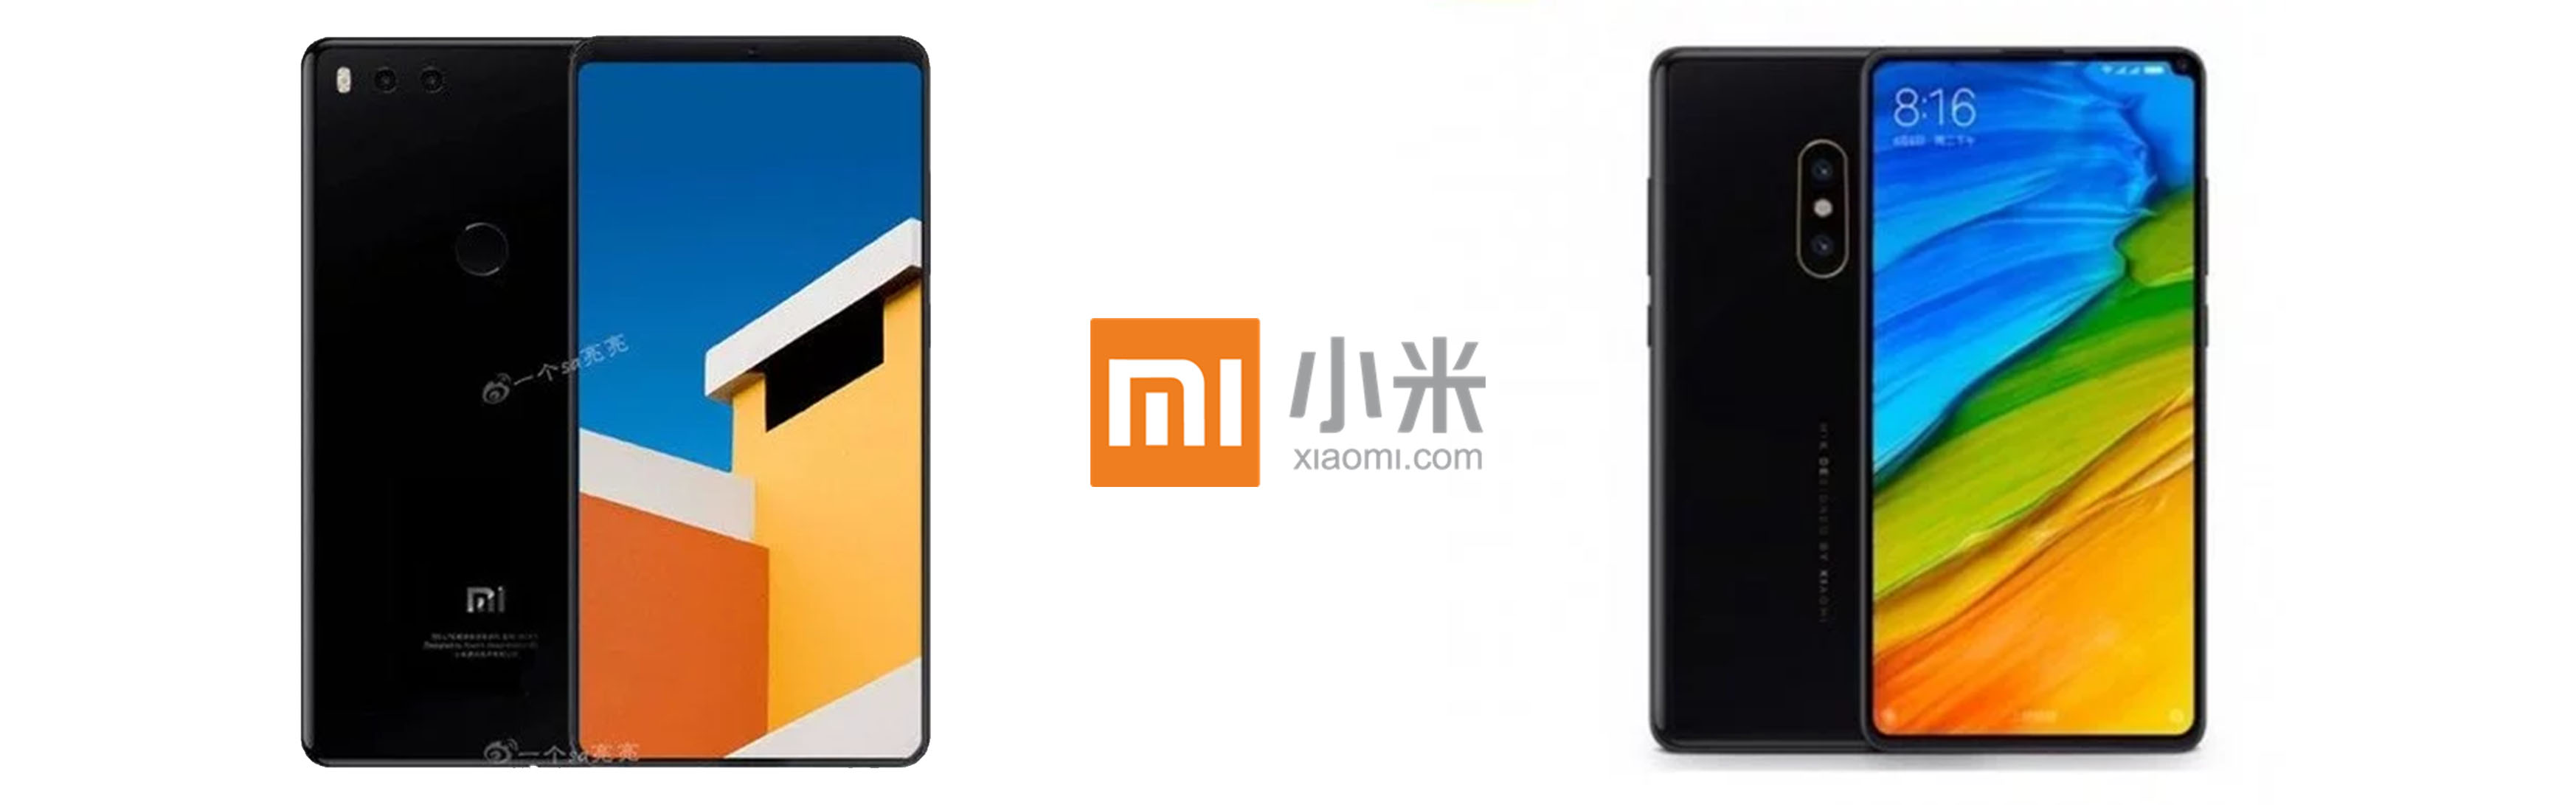 Xiaomi Mi Mix 2s und Mi 7